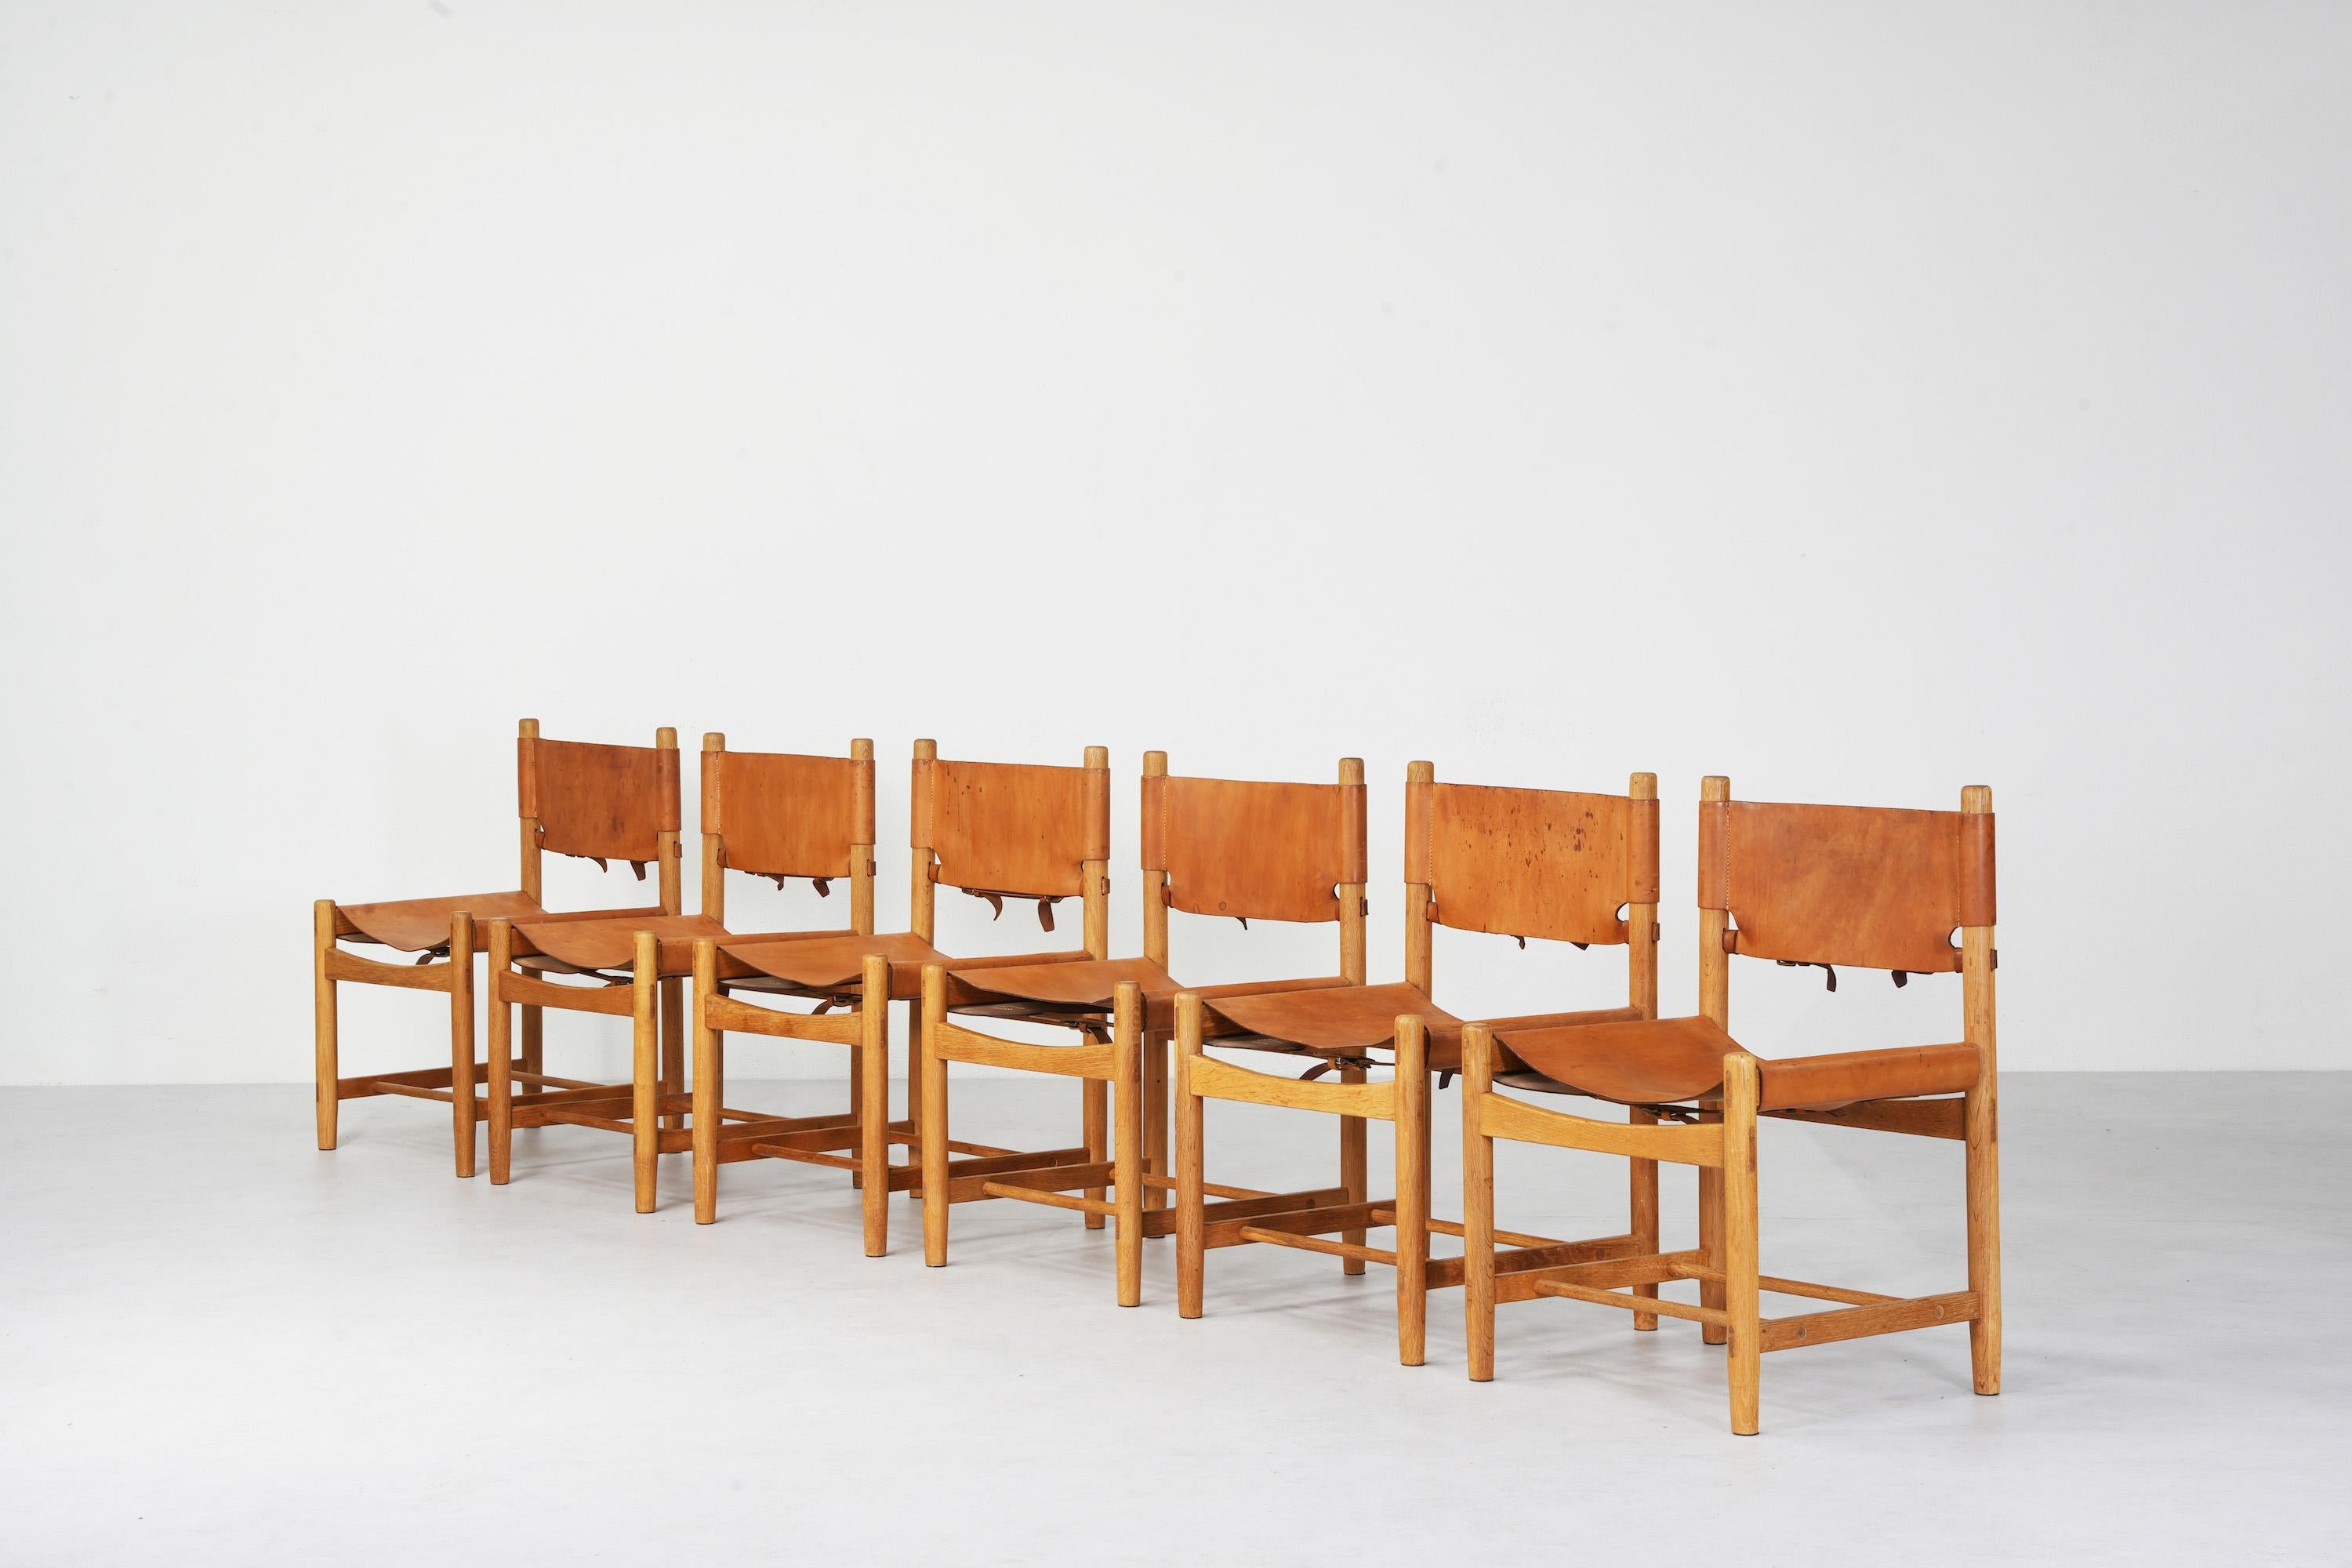 Schöner Satz von sechs 'Hunting' Stühlen, wahrscheinlich die älteste Version des Modells Nr. 3237, zugeschrieben Børge Mogensen und Fredericia Furniture, Dänemark. 
Alle sechs Stühle sind mit tollem patiniertem Leder in Cognacbraun und einem schön